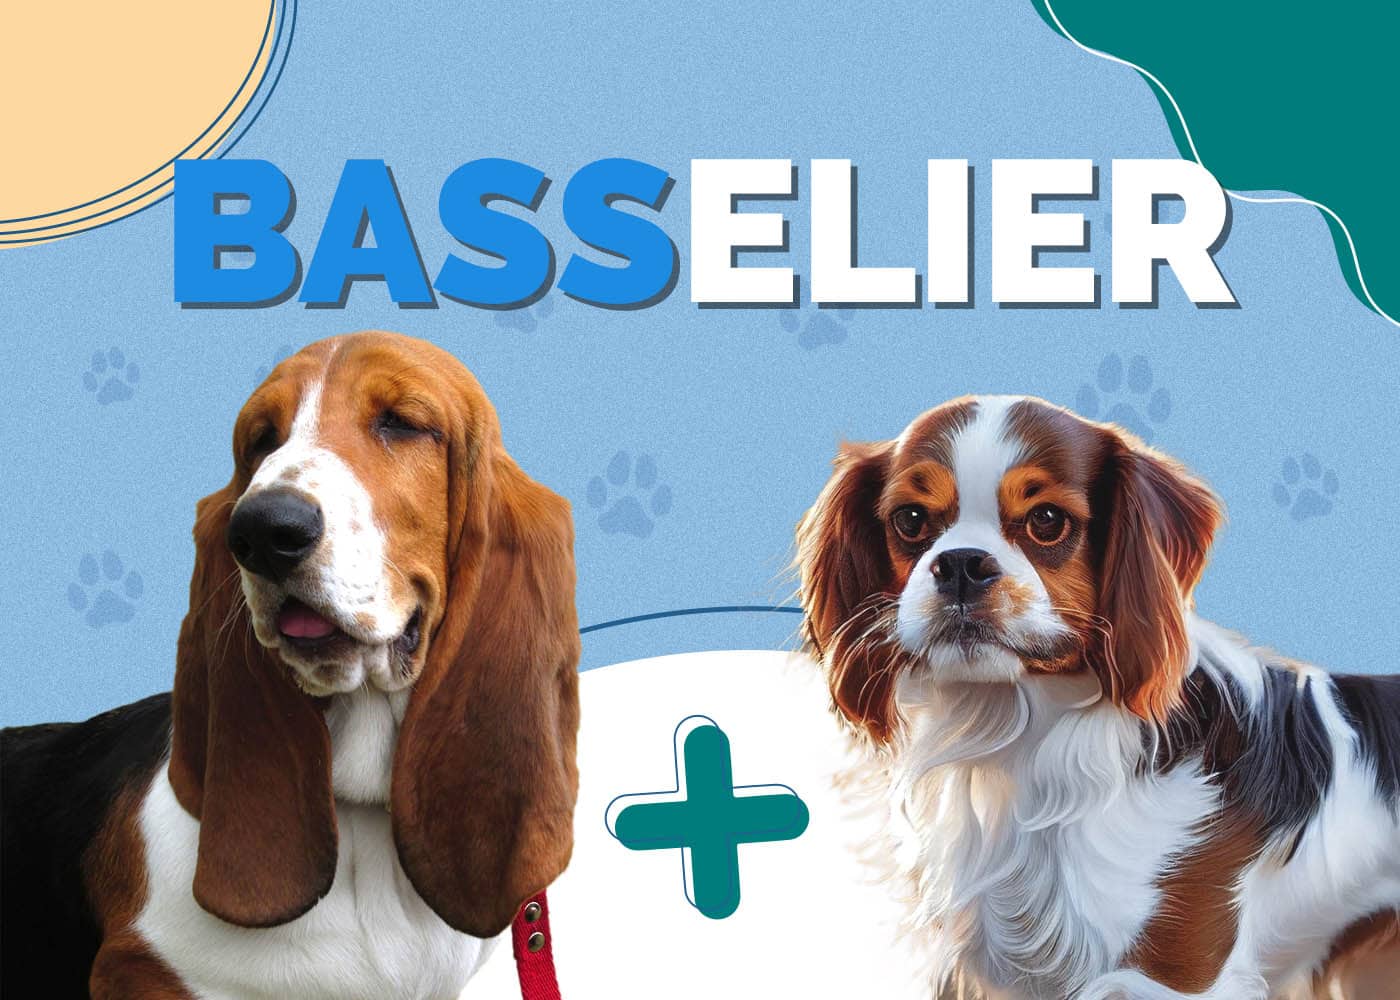 Basselier (Cavalier King Charles Spaniel & Basset Hound Mix)